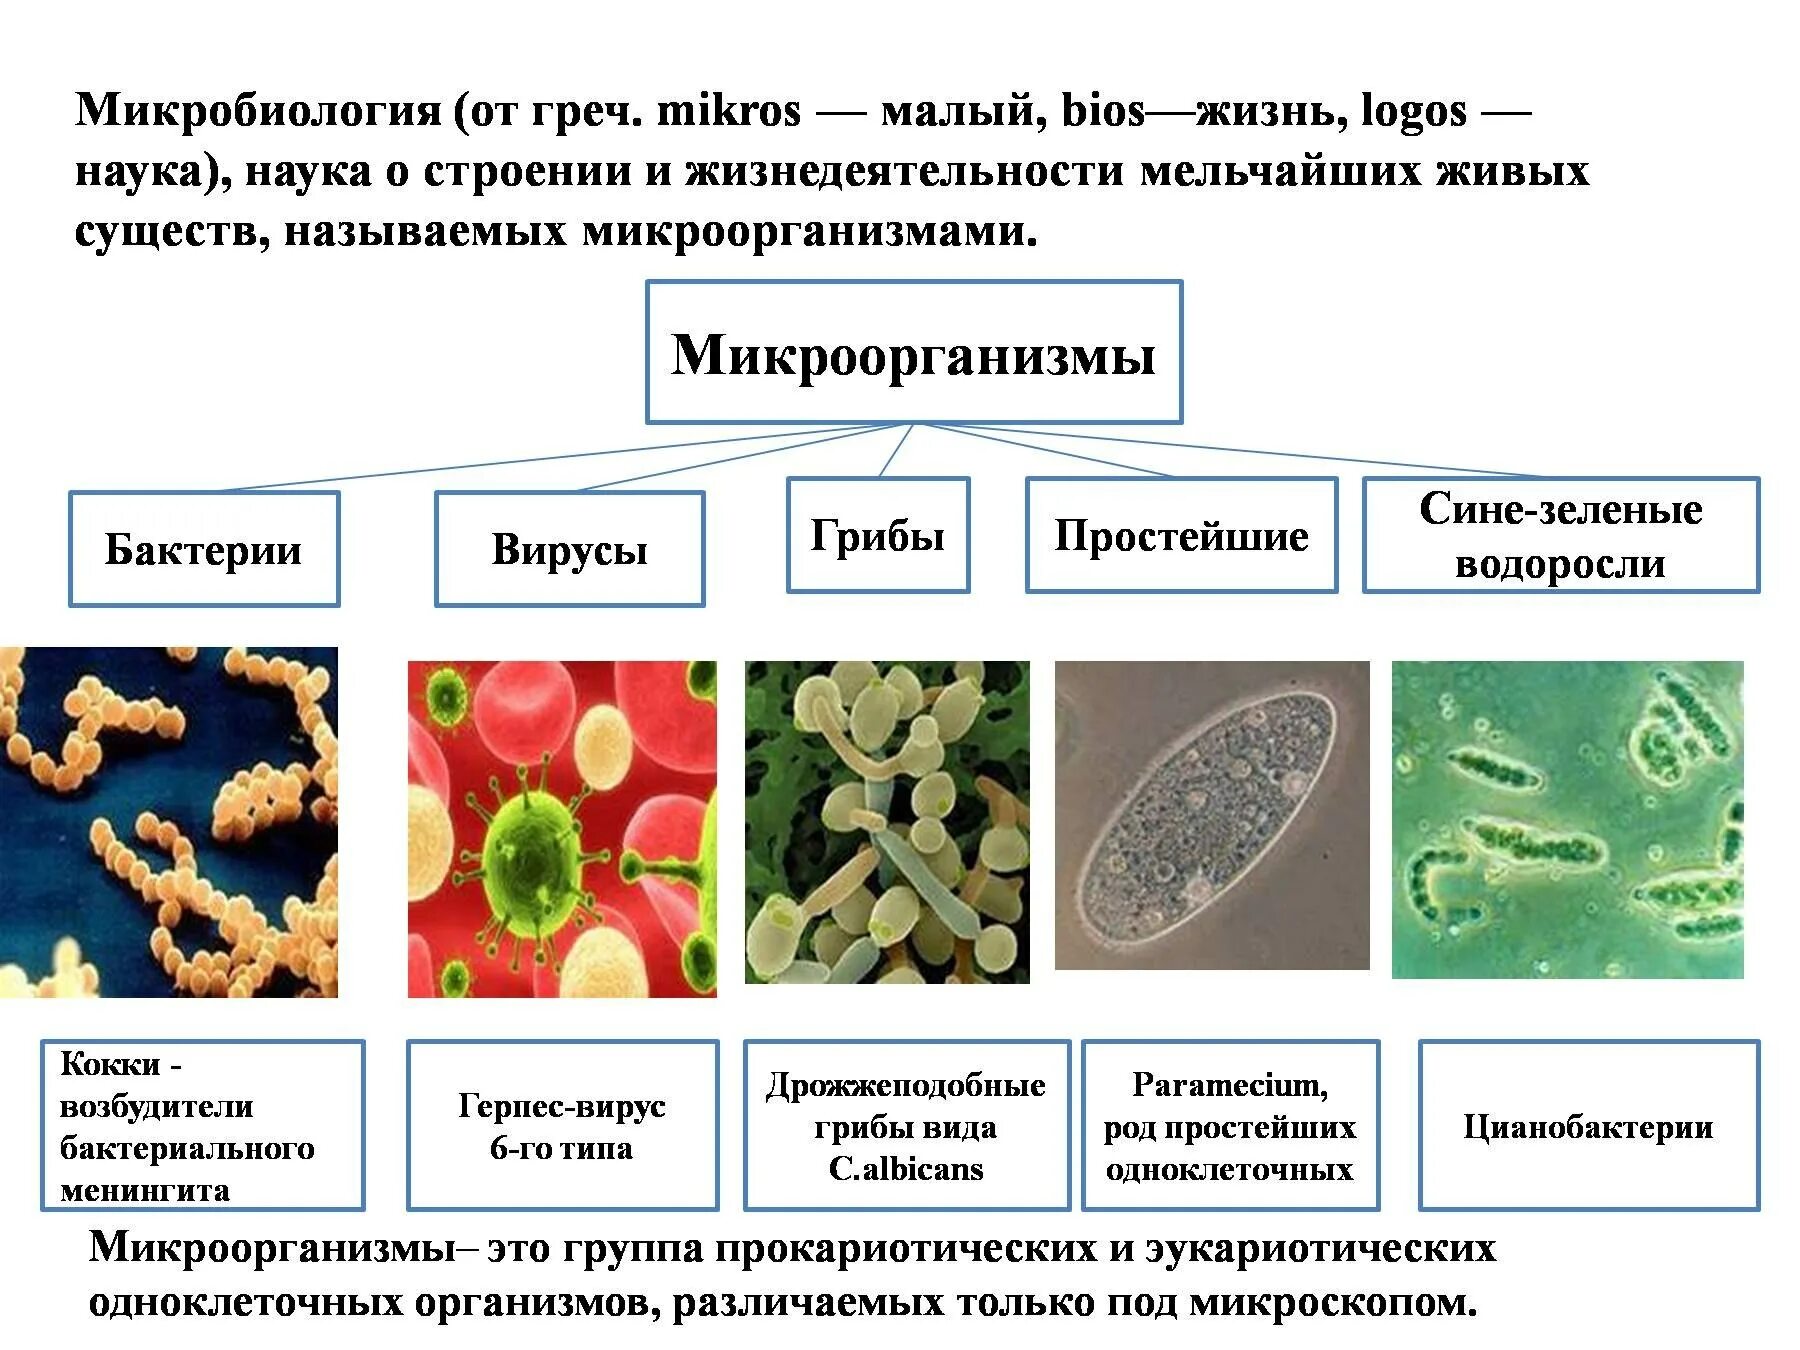 Клеточное строение имеет бактерия вирус. Строение микробов микробиология. Бактерии и вирусы таблица микробиология. Вирусы бактерии протисты. Классификация бактерий и вирусов.